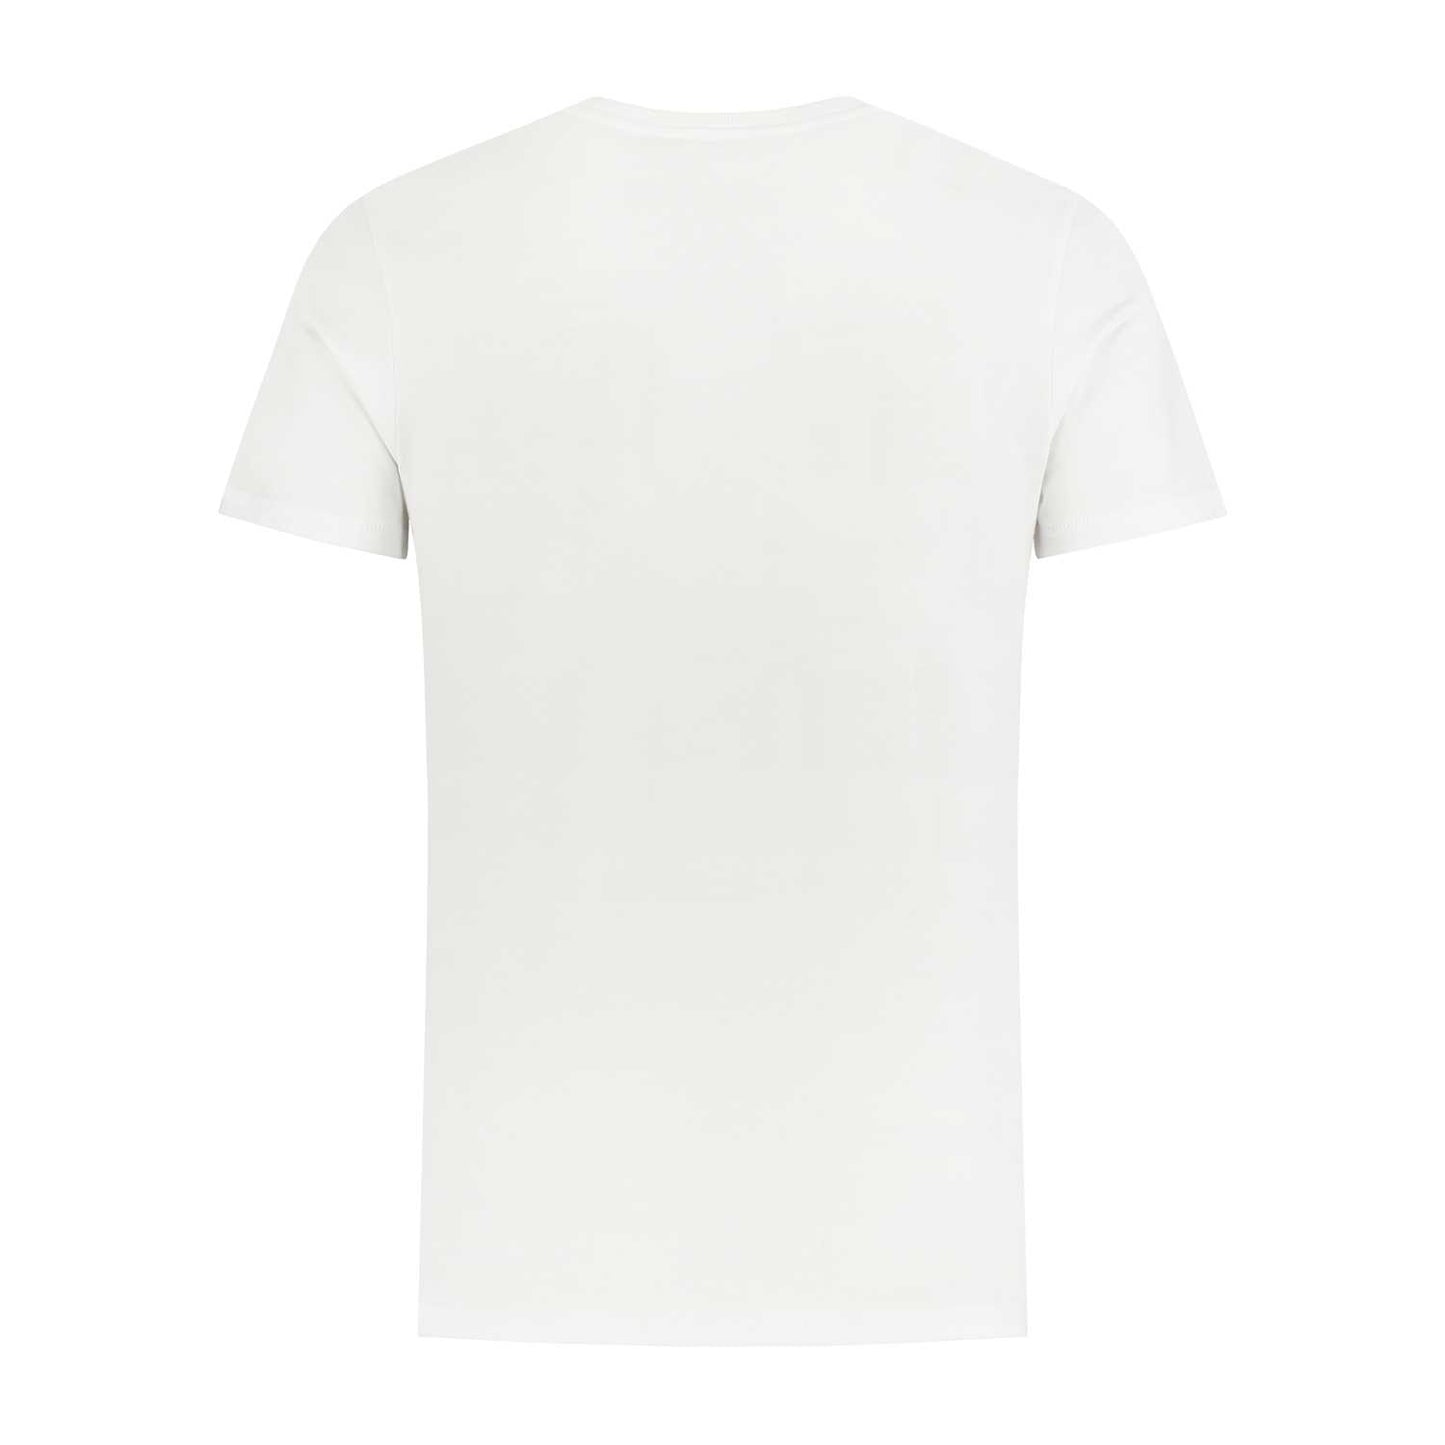 Basic logo white t-shirt (men)